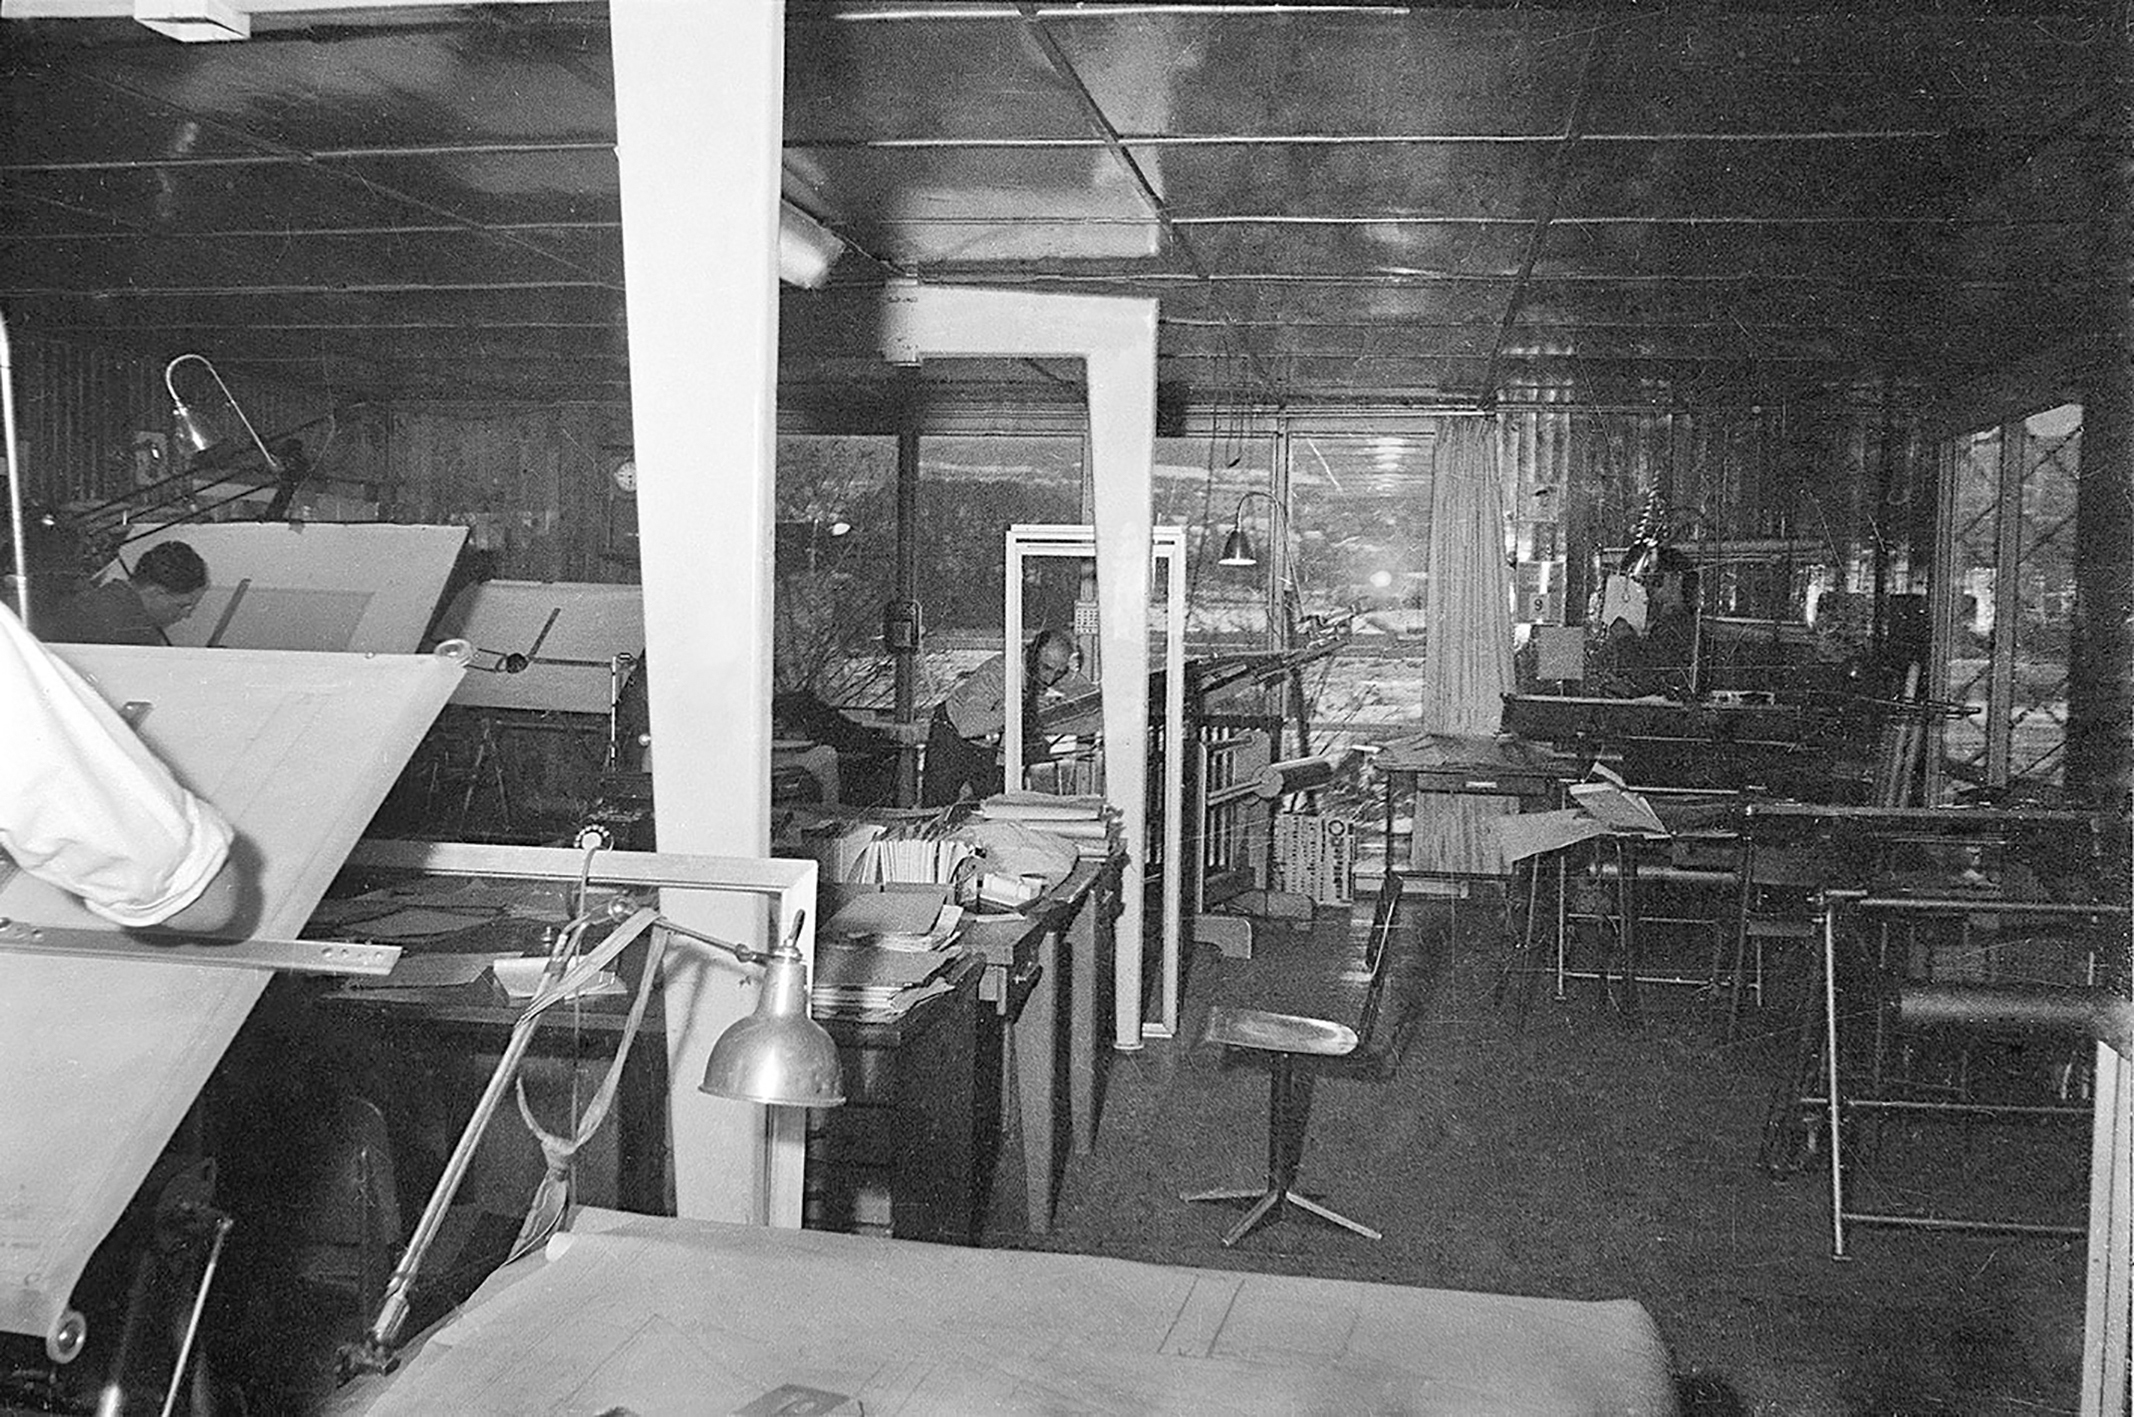 Bureau d’études des Ateliers Jean Prouvé, c. 1952.